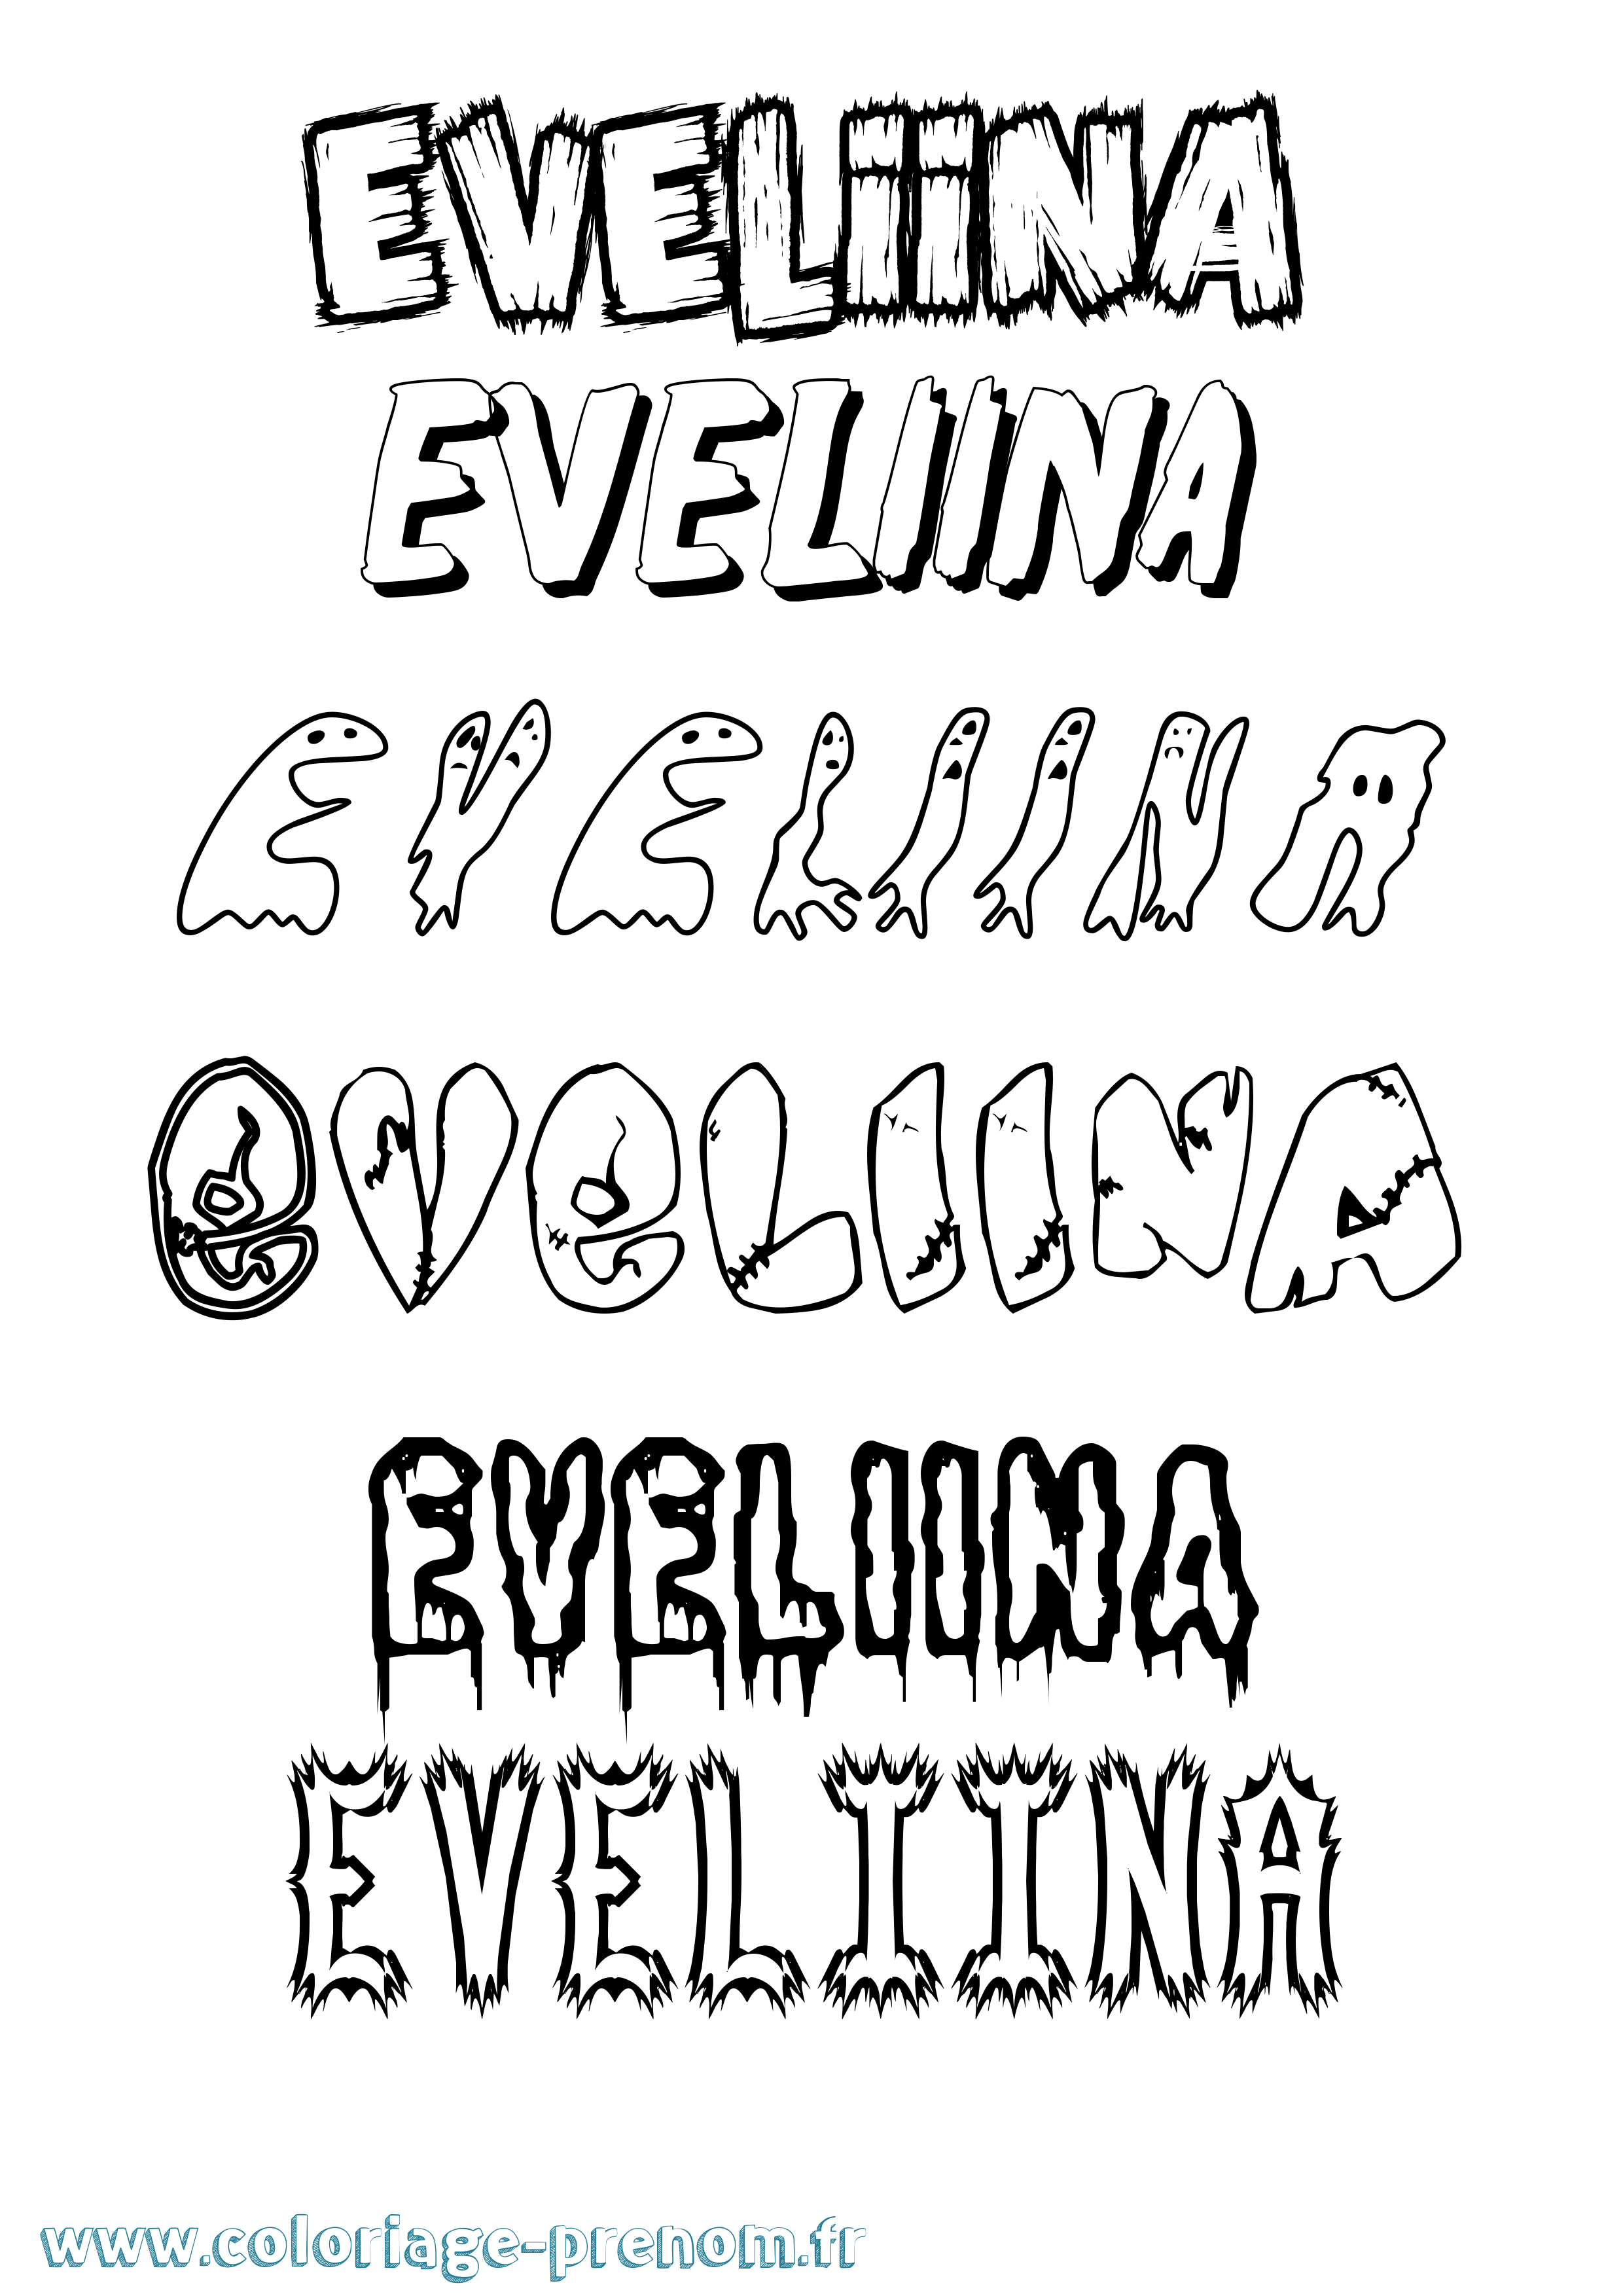 Coloriage prénom Eveliina Frisson